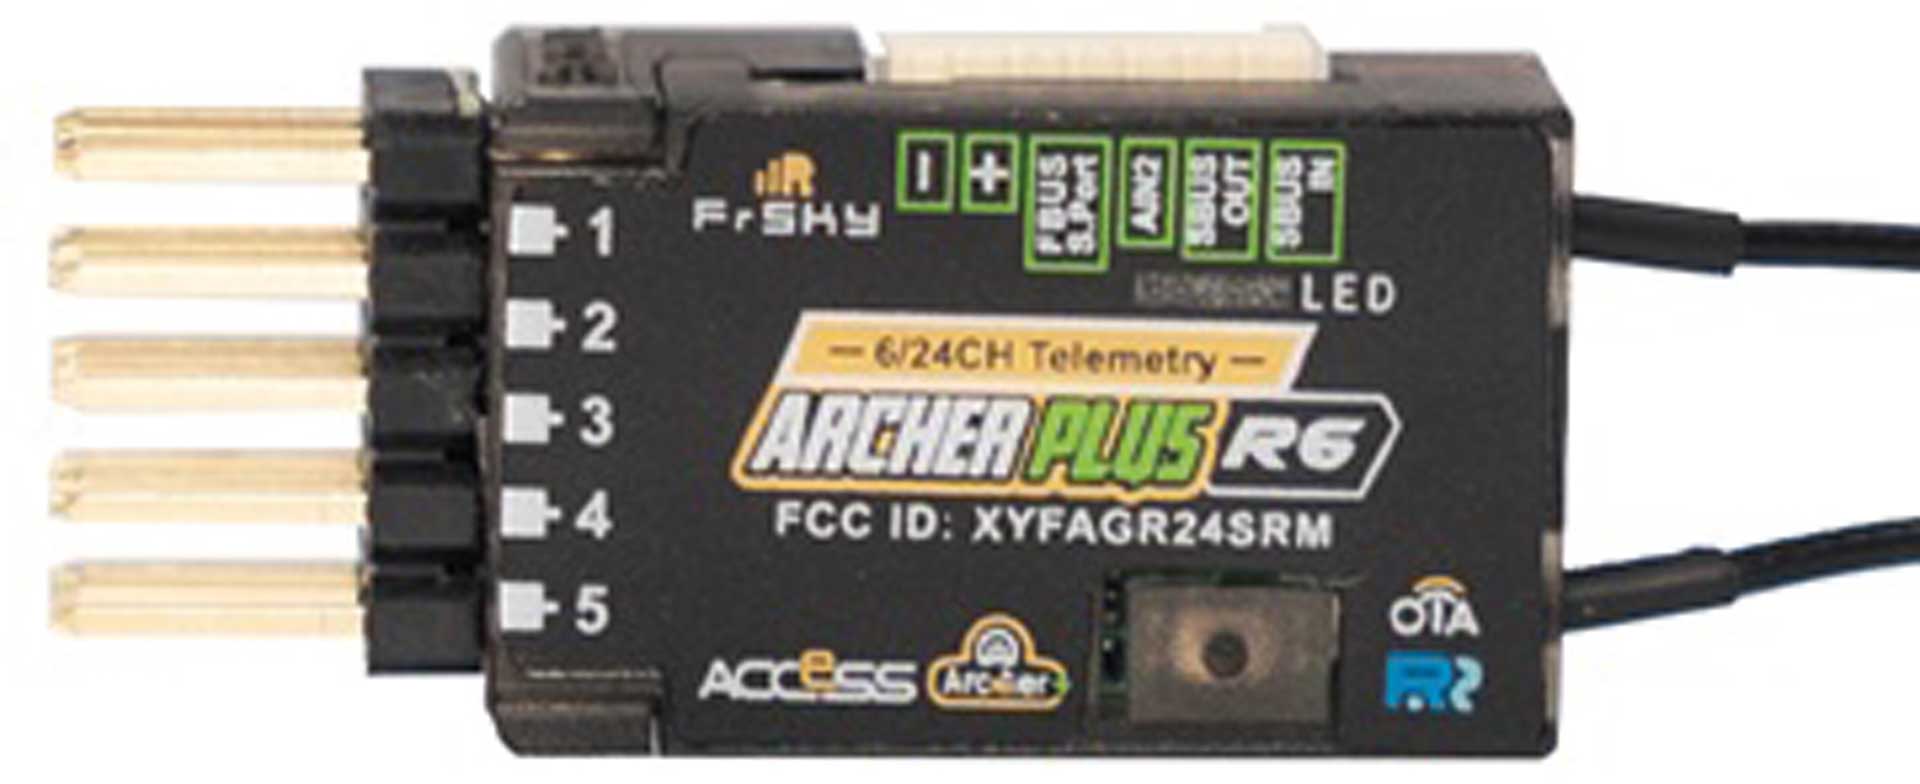 FrSky Empfänger Archer Plus R6 2,4Ghz